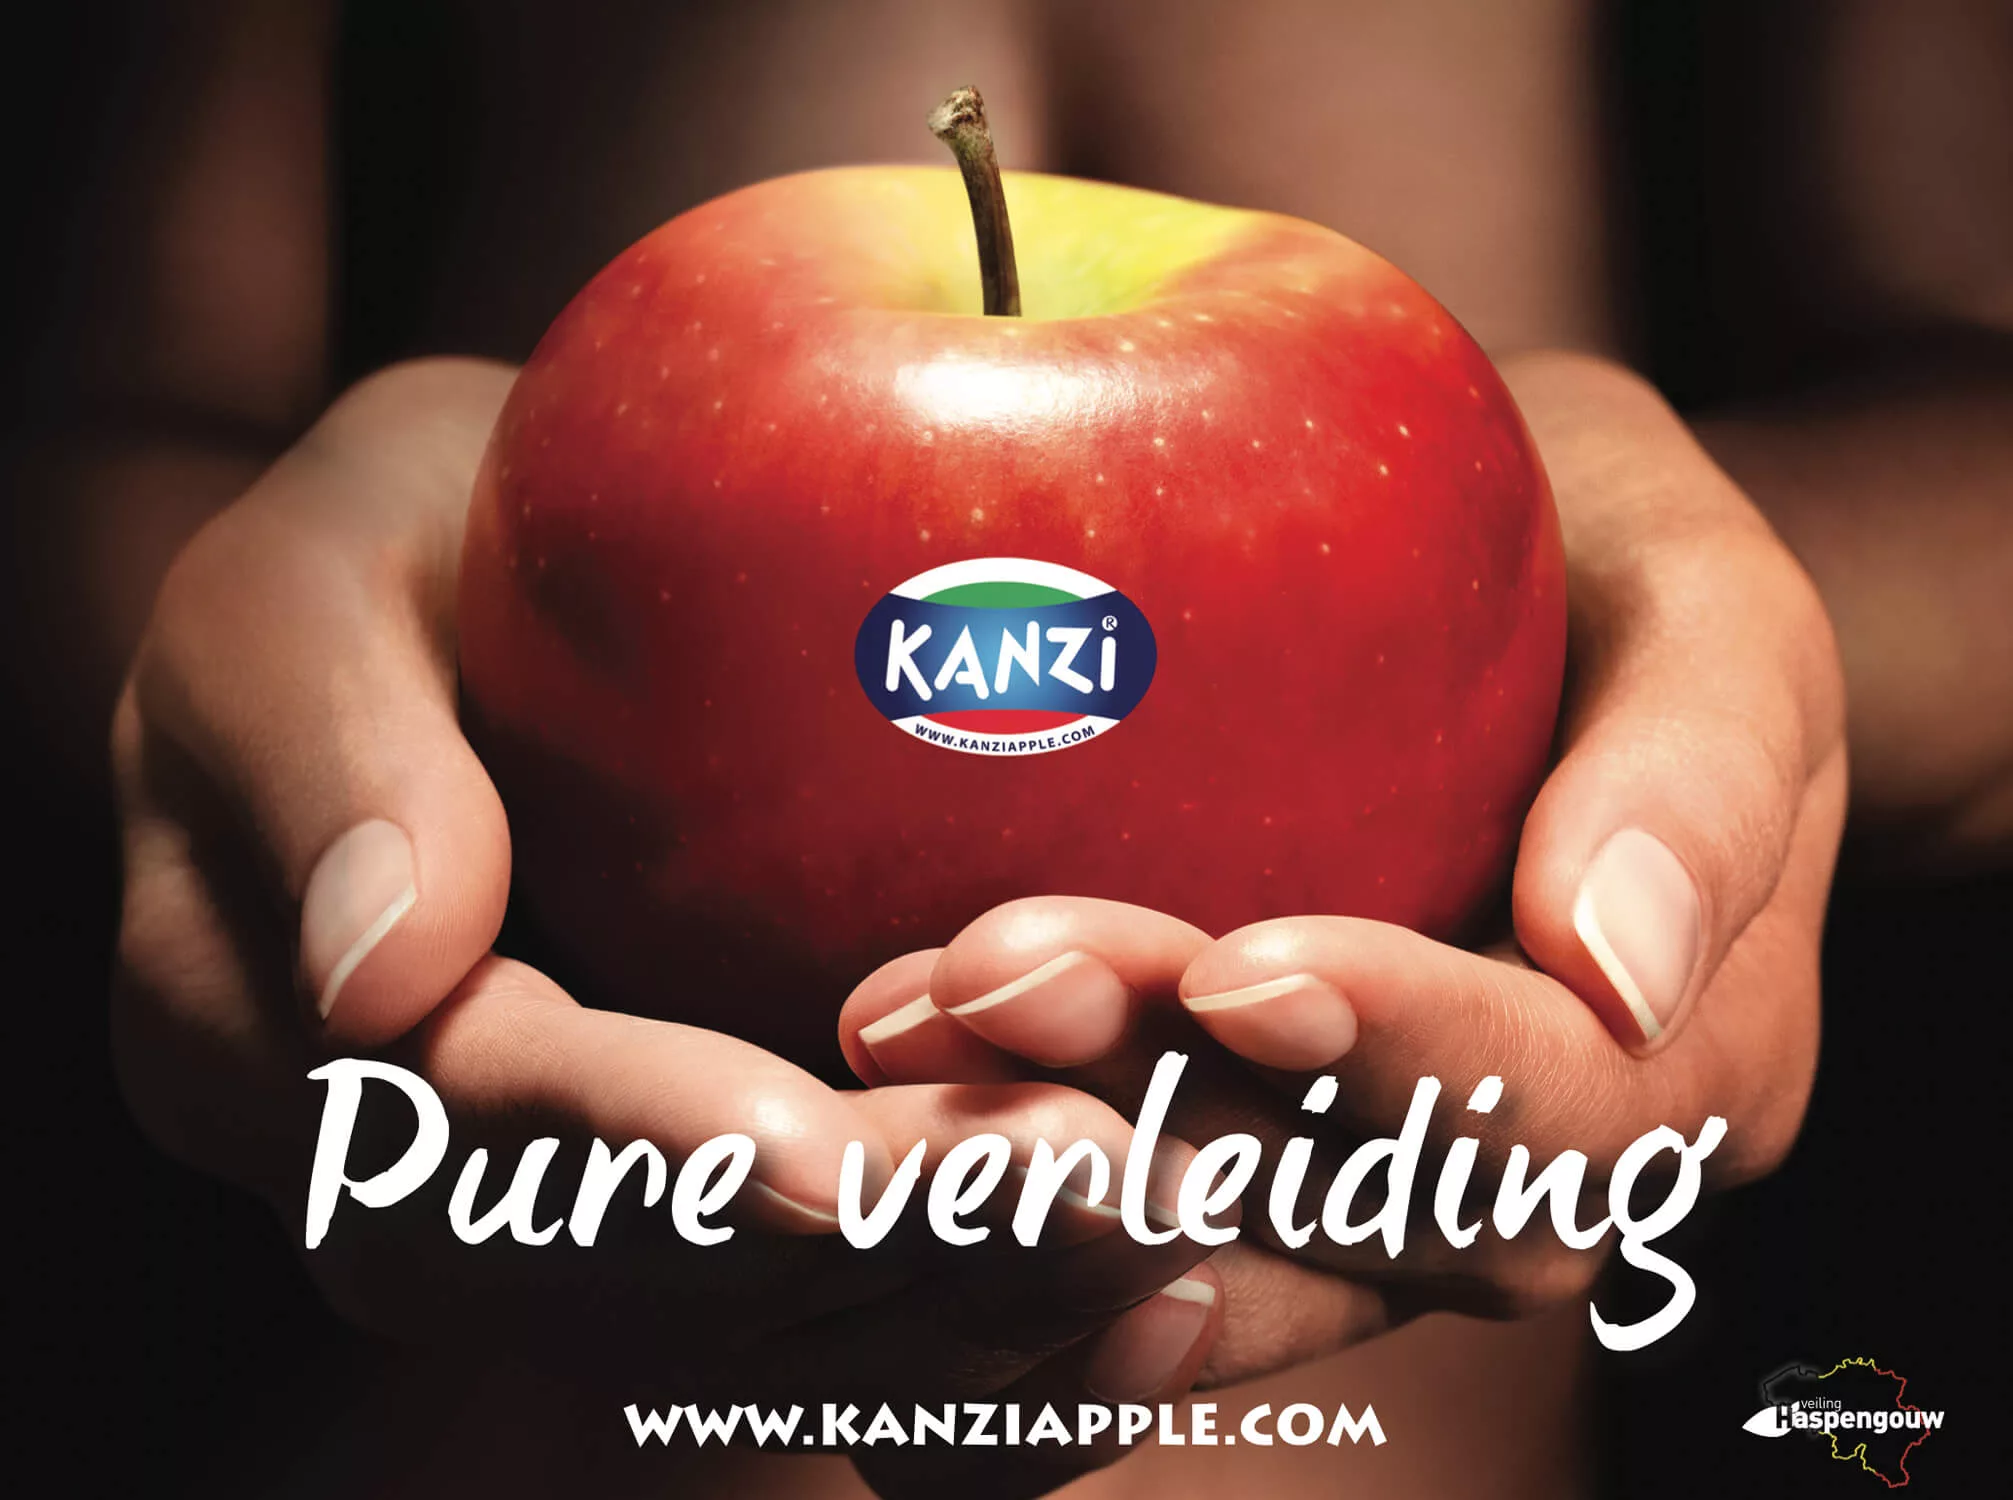 Portfolio sem-aha: Veiling Haspengouw, Kanzi appelen